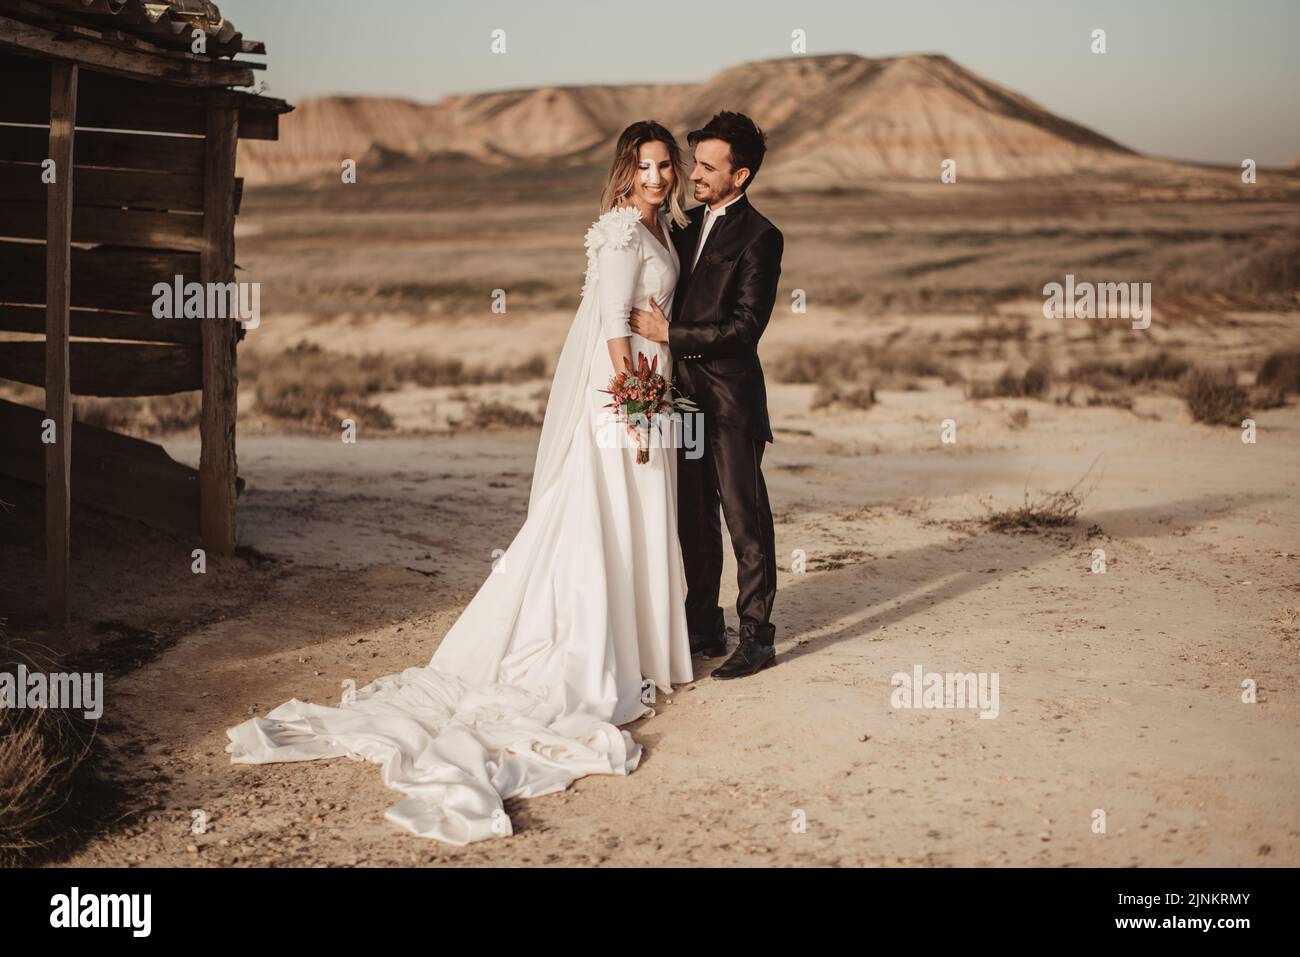 désert, romantique, couple de mariage, déserts, wüste, romantiques, couples de mariage Banque D'Images